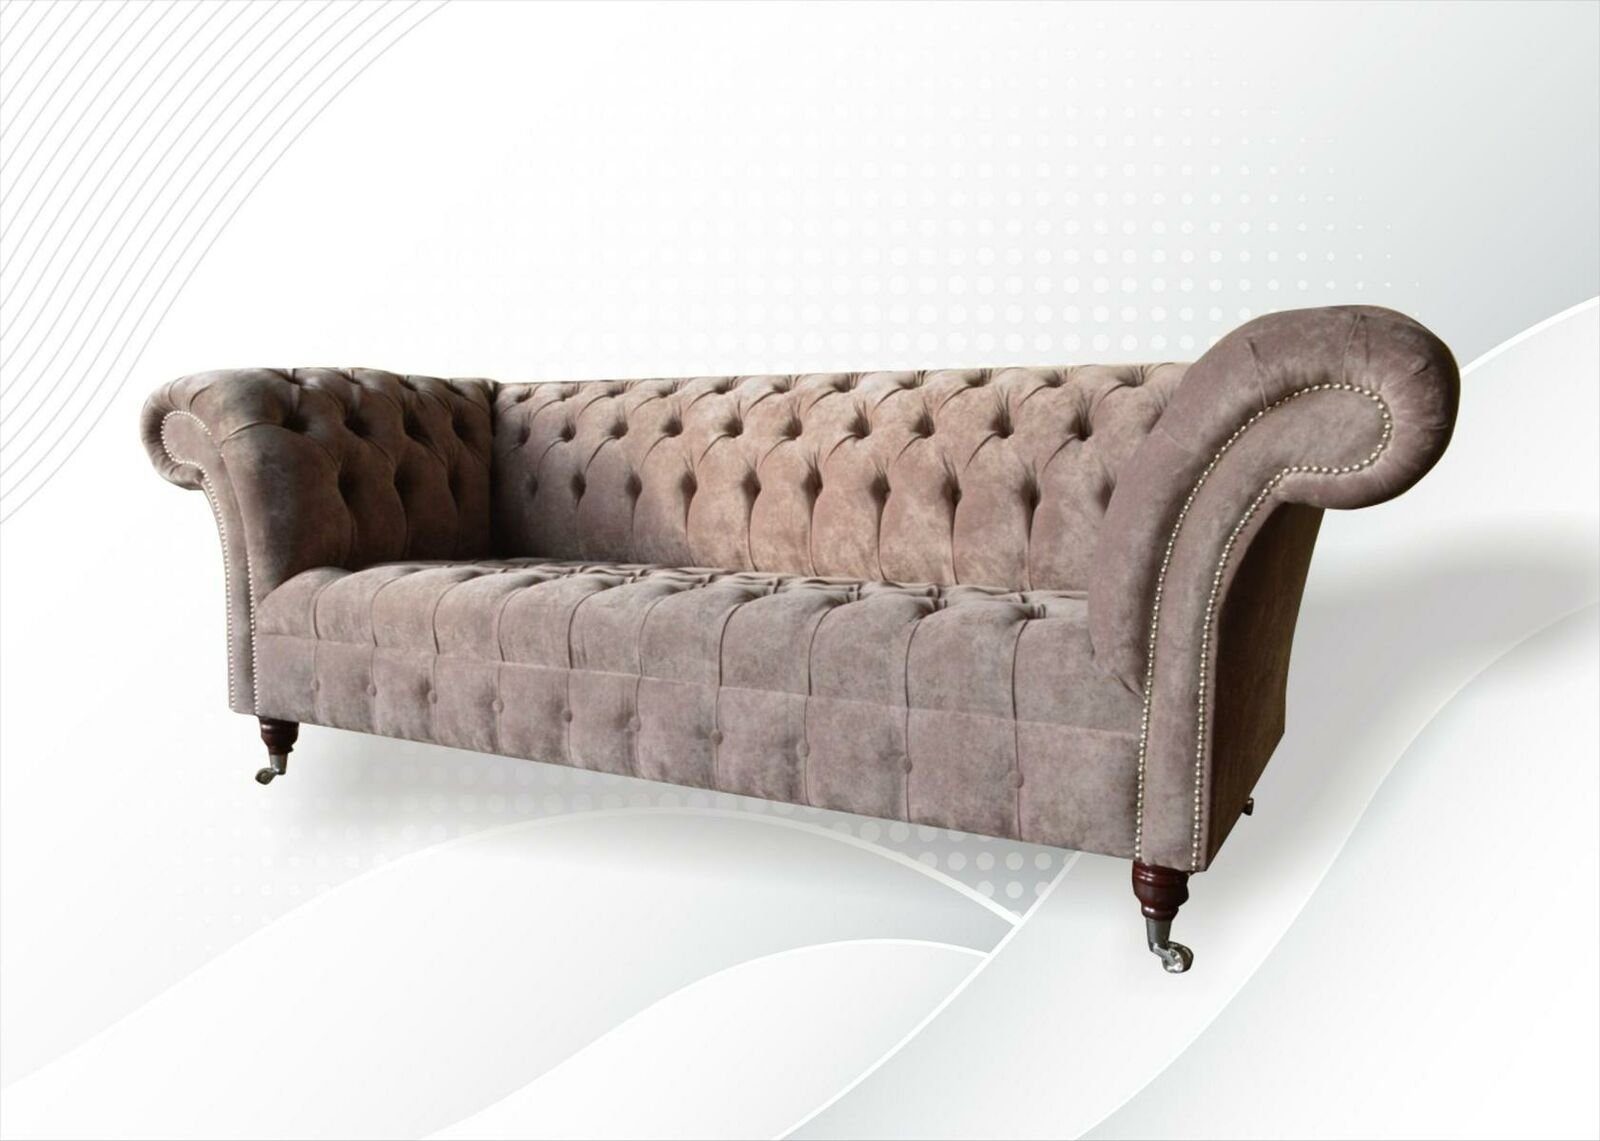 Made Brauner Polstermöbel Europe Chesterfield 3-er Neu, Dreisitzer Luxus Möbel JVmoebel in Sofa